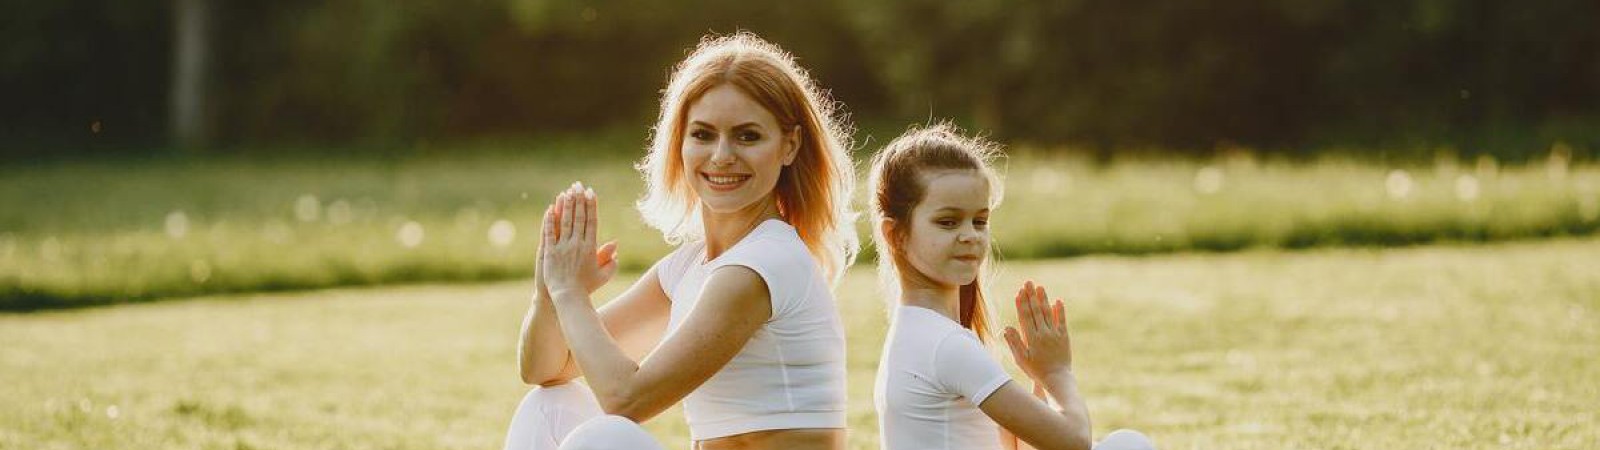 Corso Online Certificato di Yoga per bambini